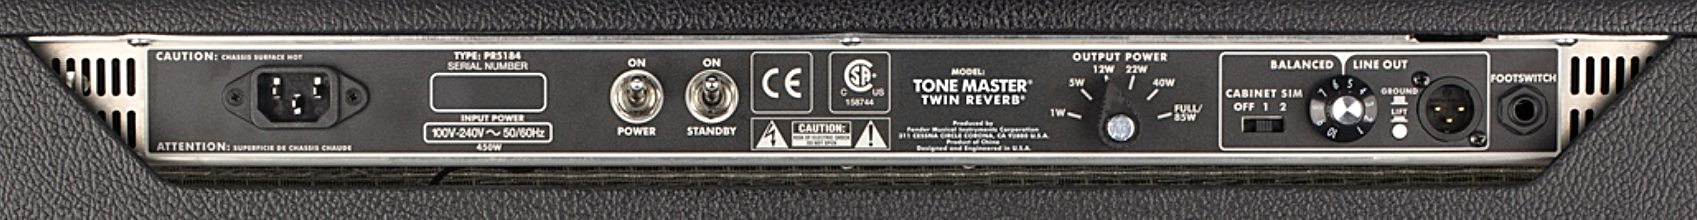 Fender Tone Master Twin Reverb 200w 2x12 - Combo voor elektrische gitaar - Variation 4